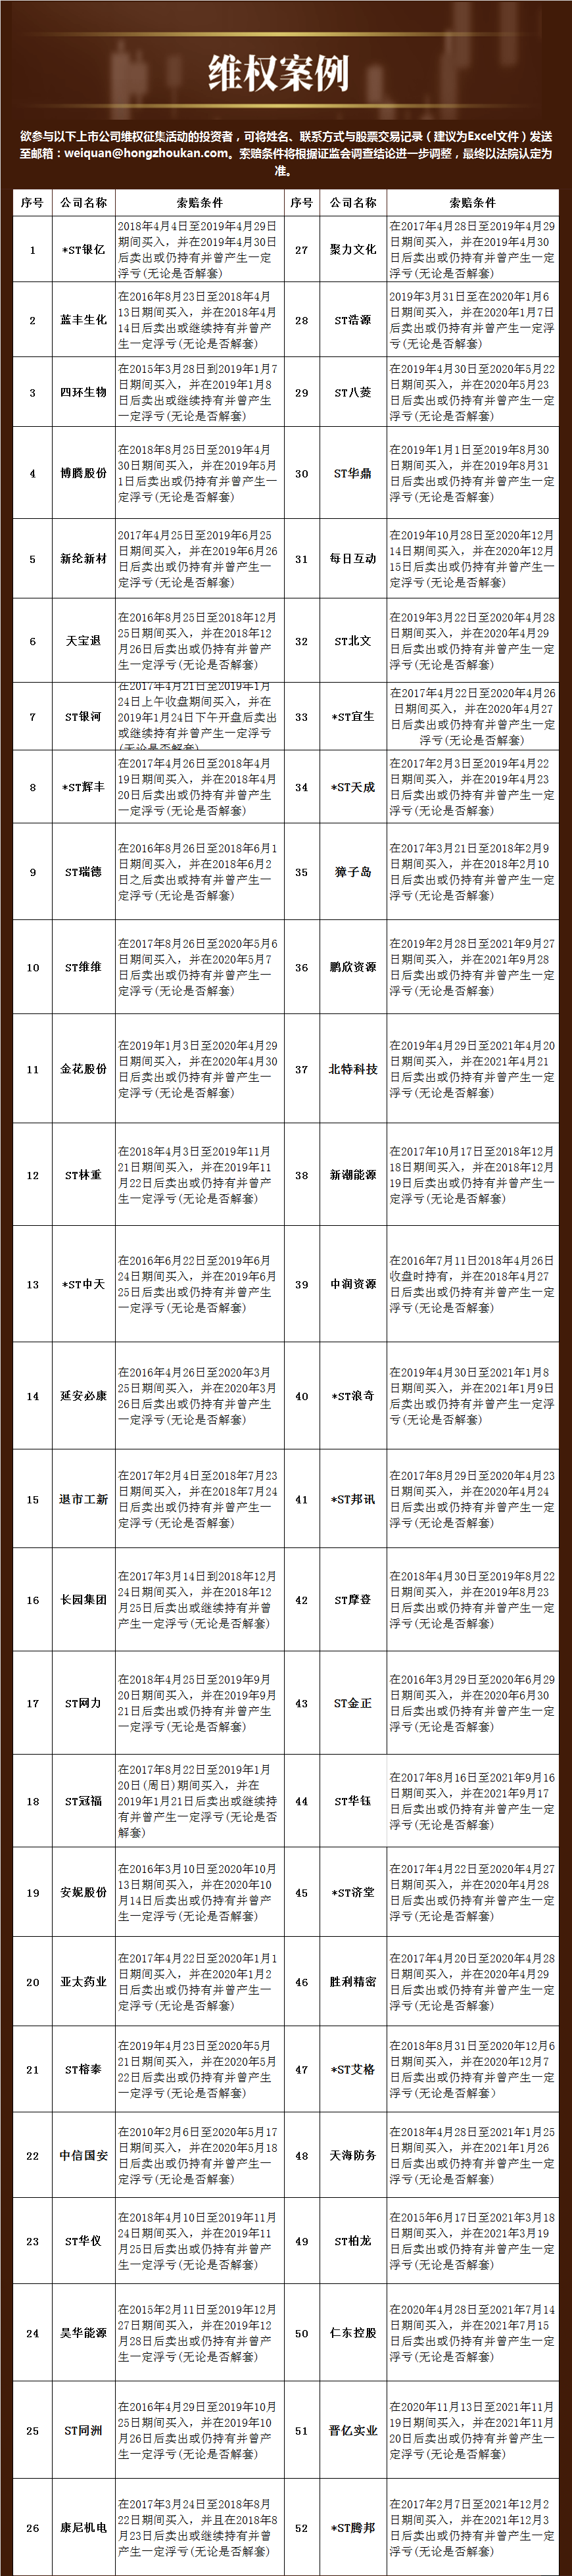 “民间维权 | 胜利精密：新增投资者诉讼金额约820万 5月25日开庭审理